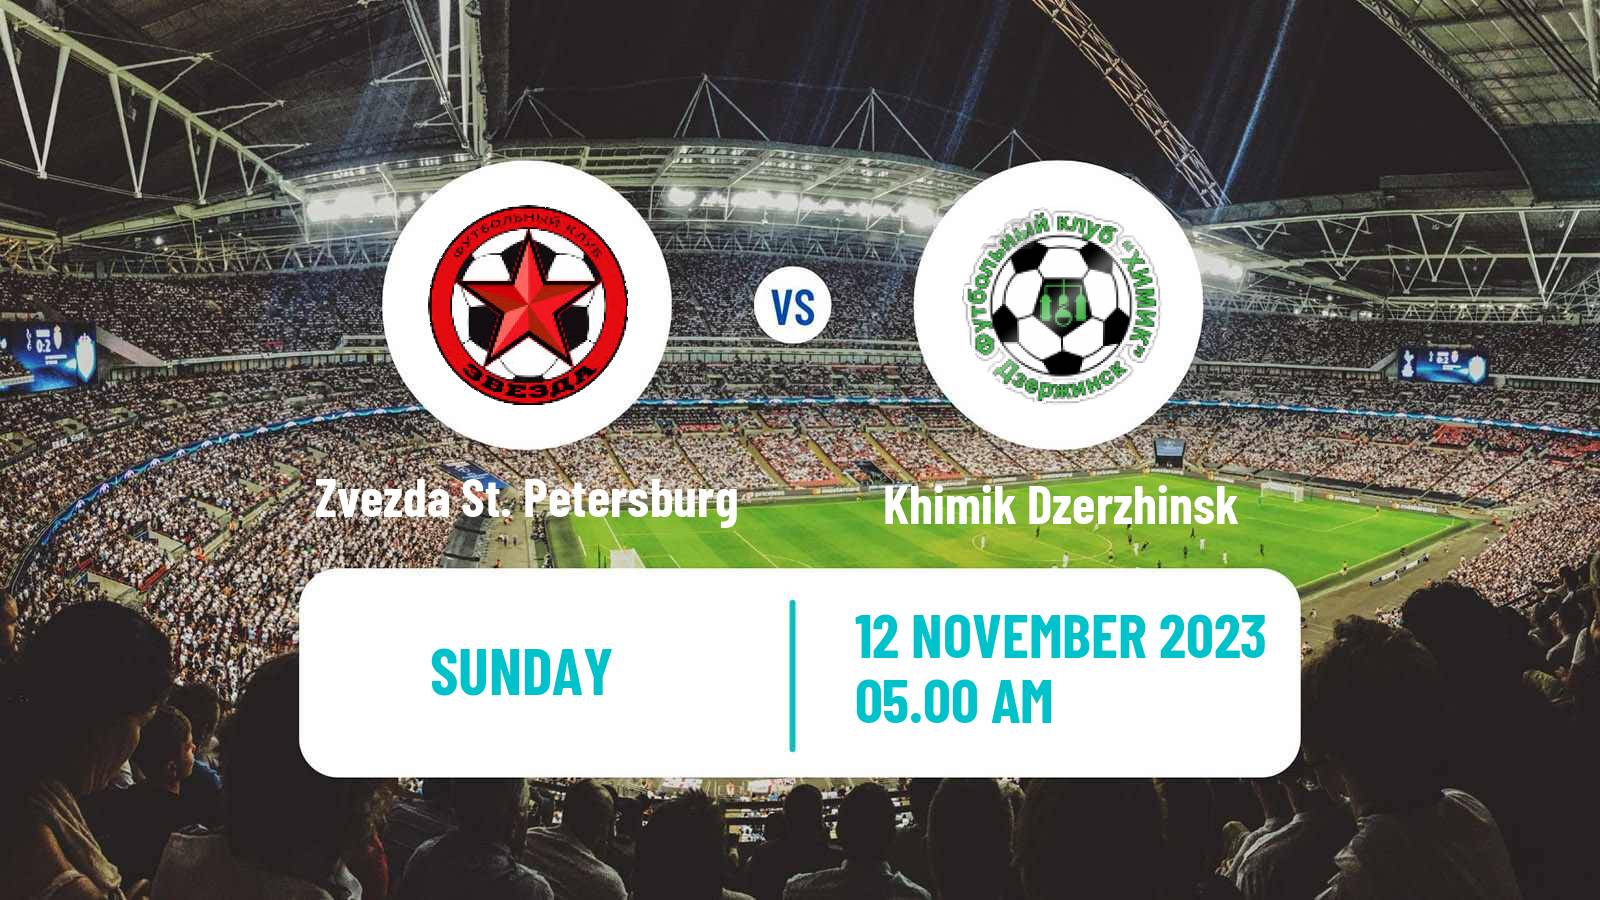 Soccer FNL 2 Division B Group 2 Zvezda St. Petersburg - Khimik Dzerzhinsk